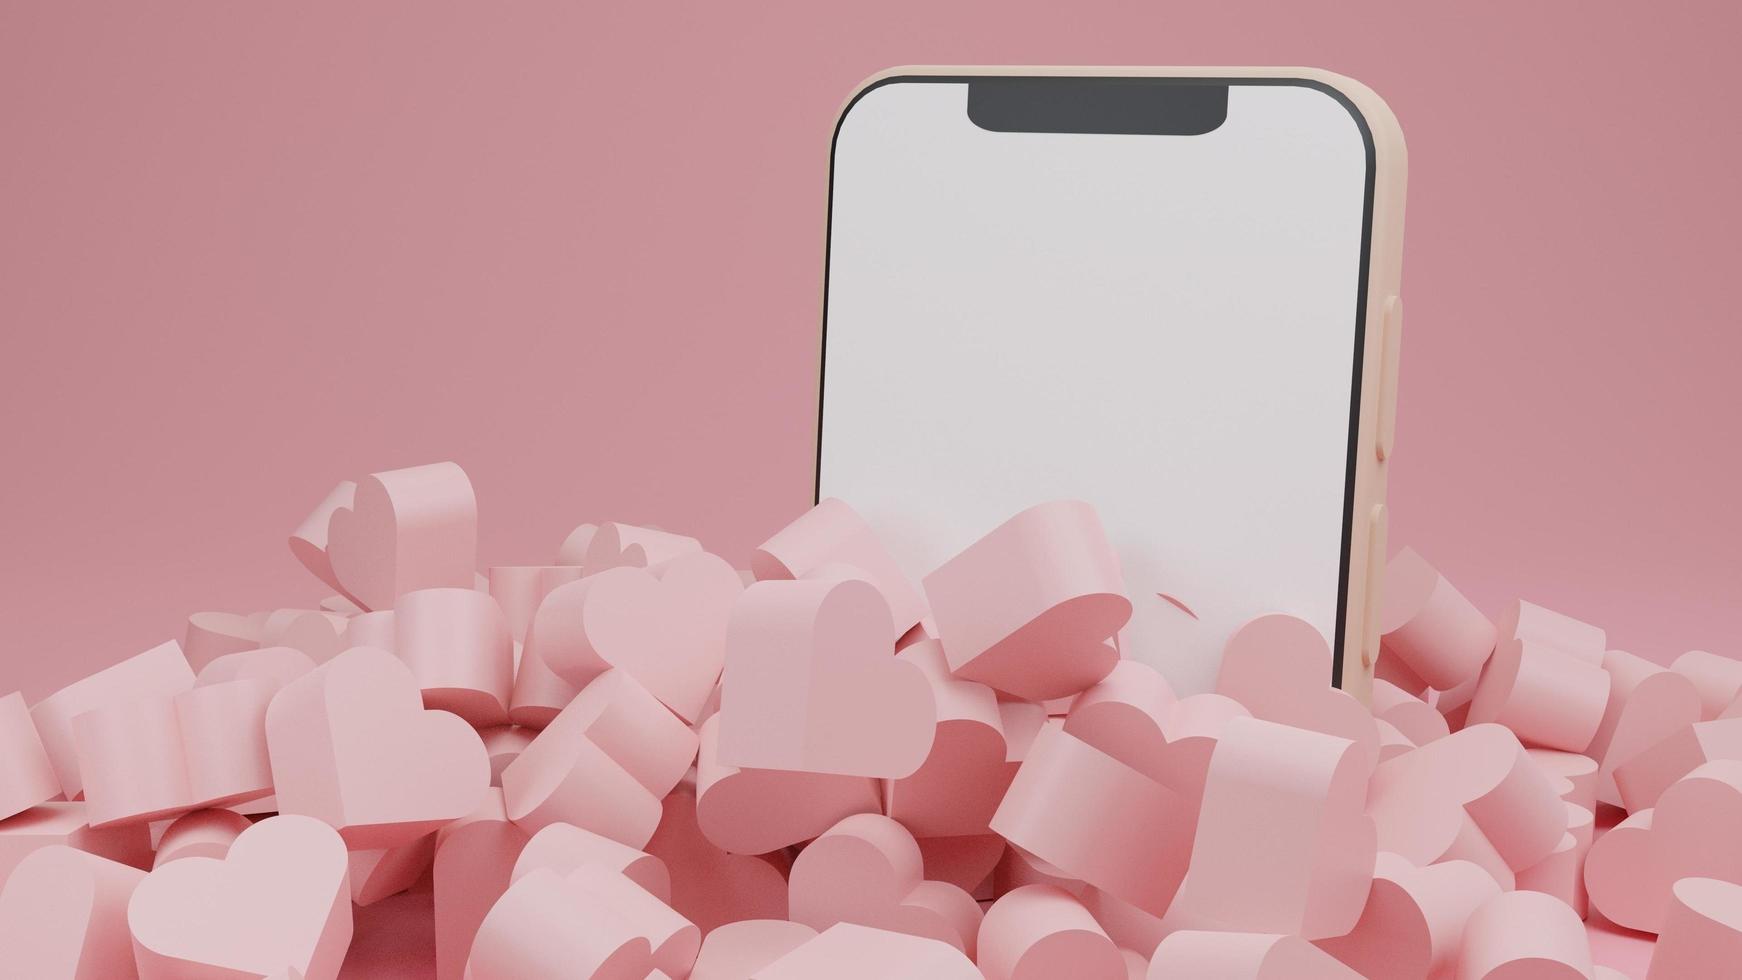 smarthphone com fundo branco de tela em branco com pilha de corações, símbolo de amor, dia dos namorados, pôster da web, conceito de cartão de saudação ilustração de renderização em 3d foto